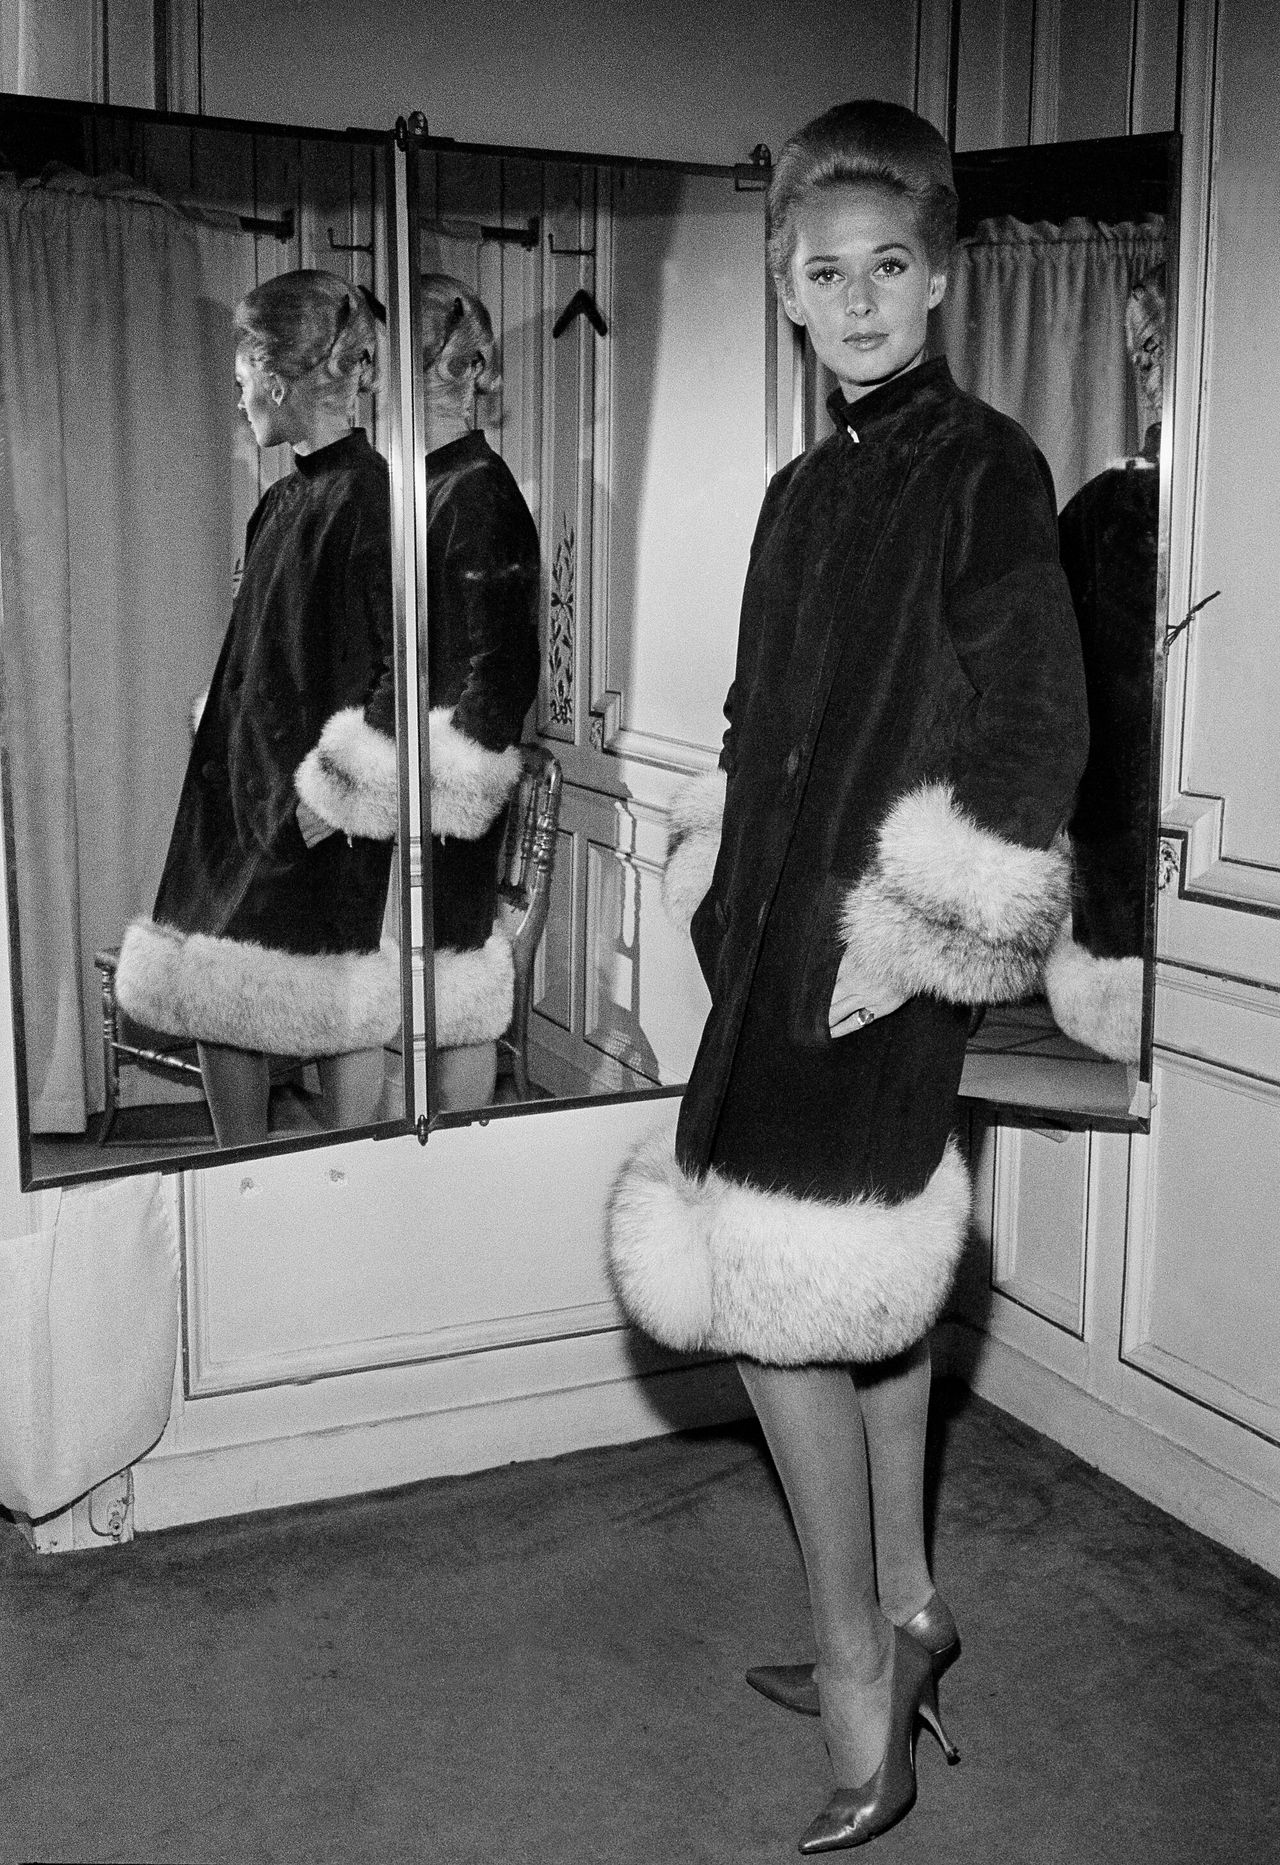 Η Τίπι στην επίδειξη του Πιερ Καρντέν στο ξενοδοχείο Ριτζ, 9 Σεπτεμβρίου 1963, Παρίσι. 